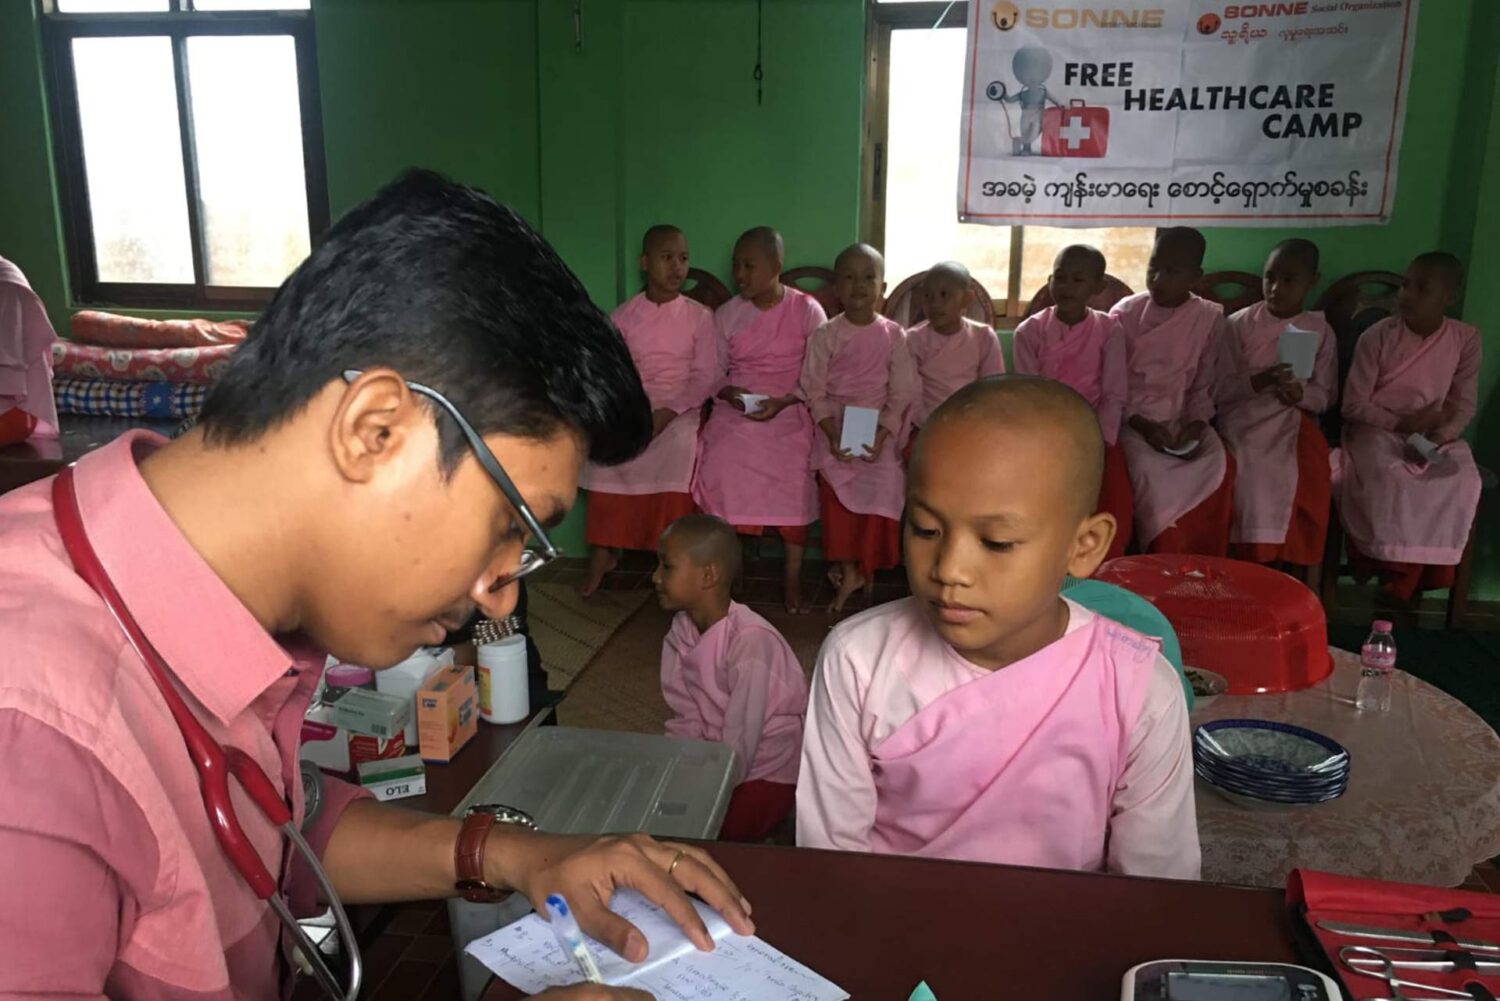 SONNE-Arzt im Nonnenkloster, Mobile Gesundheitsversorgung in Myanmar